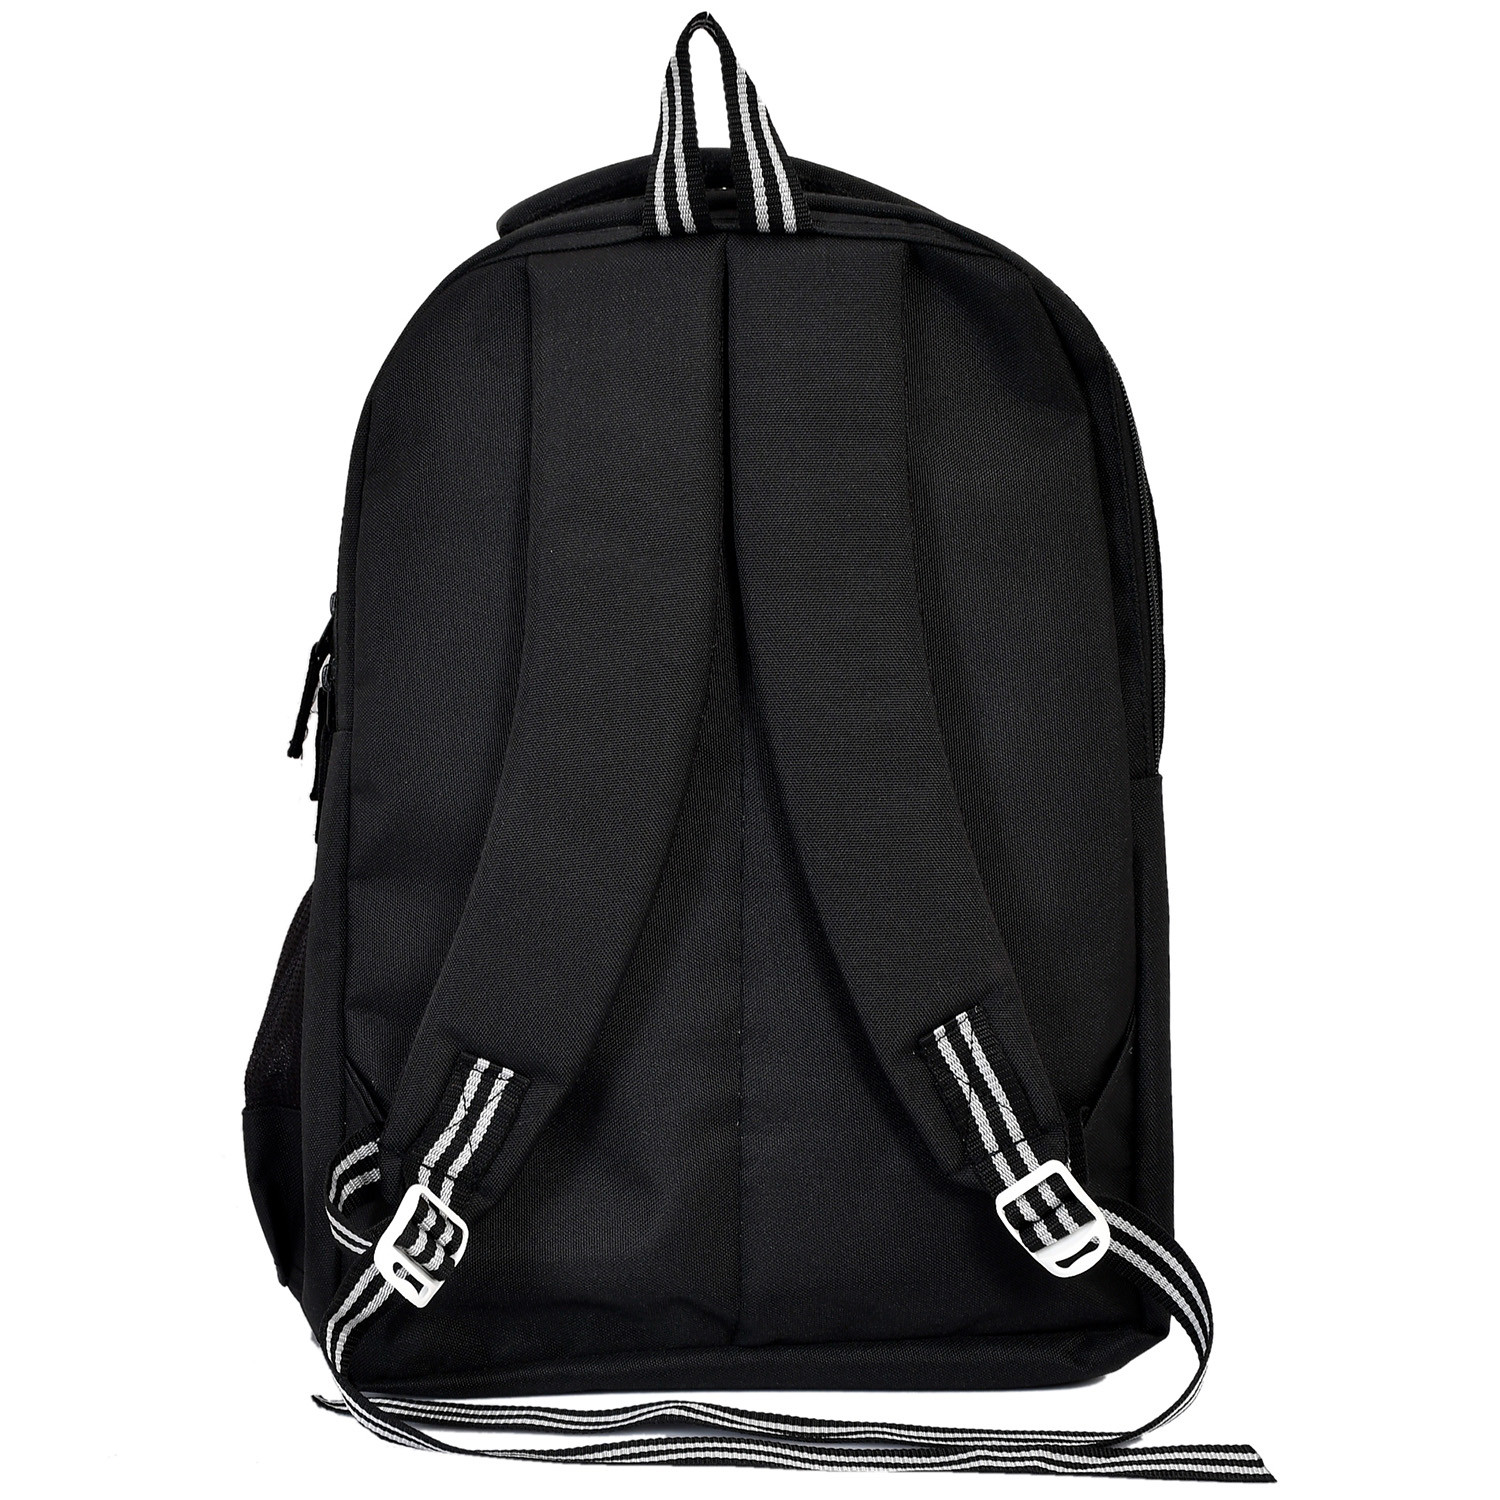 Kuber Industries Star Wars School Bag | Kids School Bags | Student Bookbag | Spacious School Bag | School Bag for Girls & Boys | School Backpack for Kids | 4 Compartments School Bag | Black